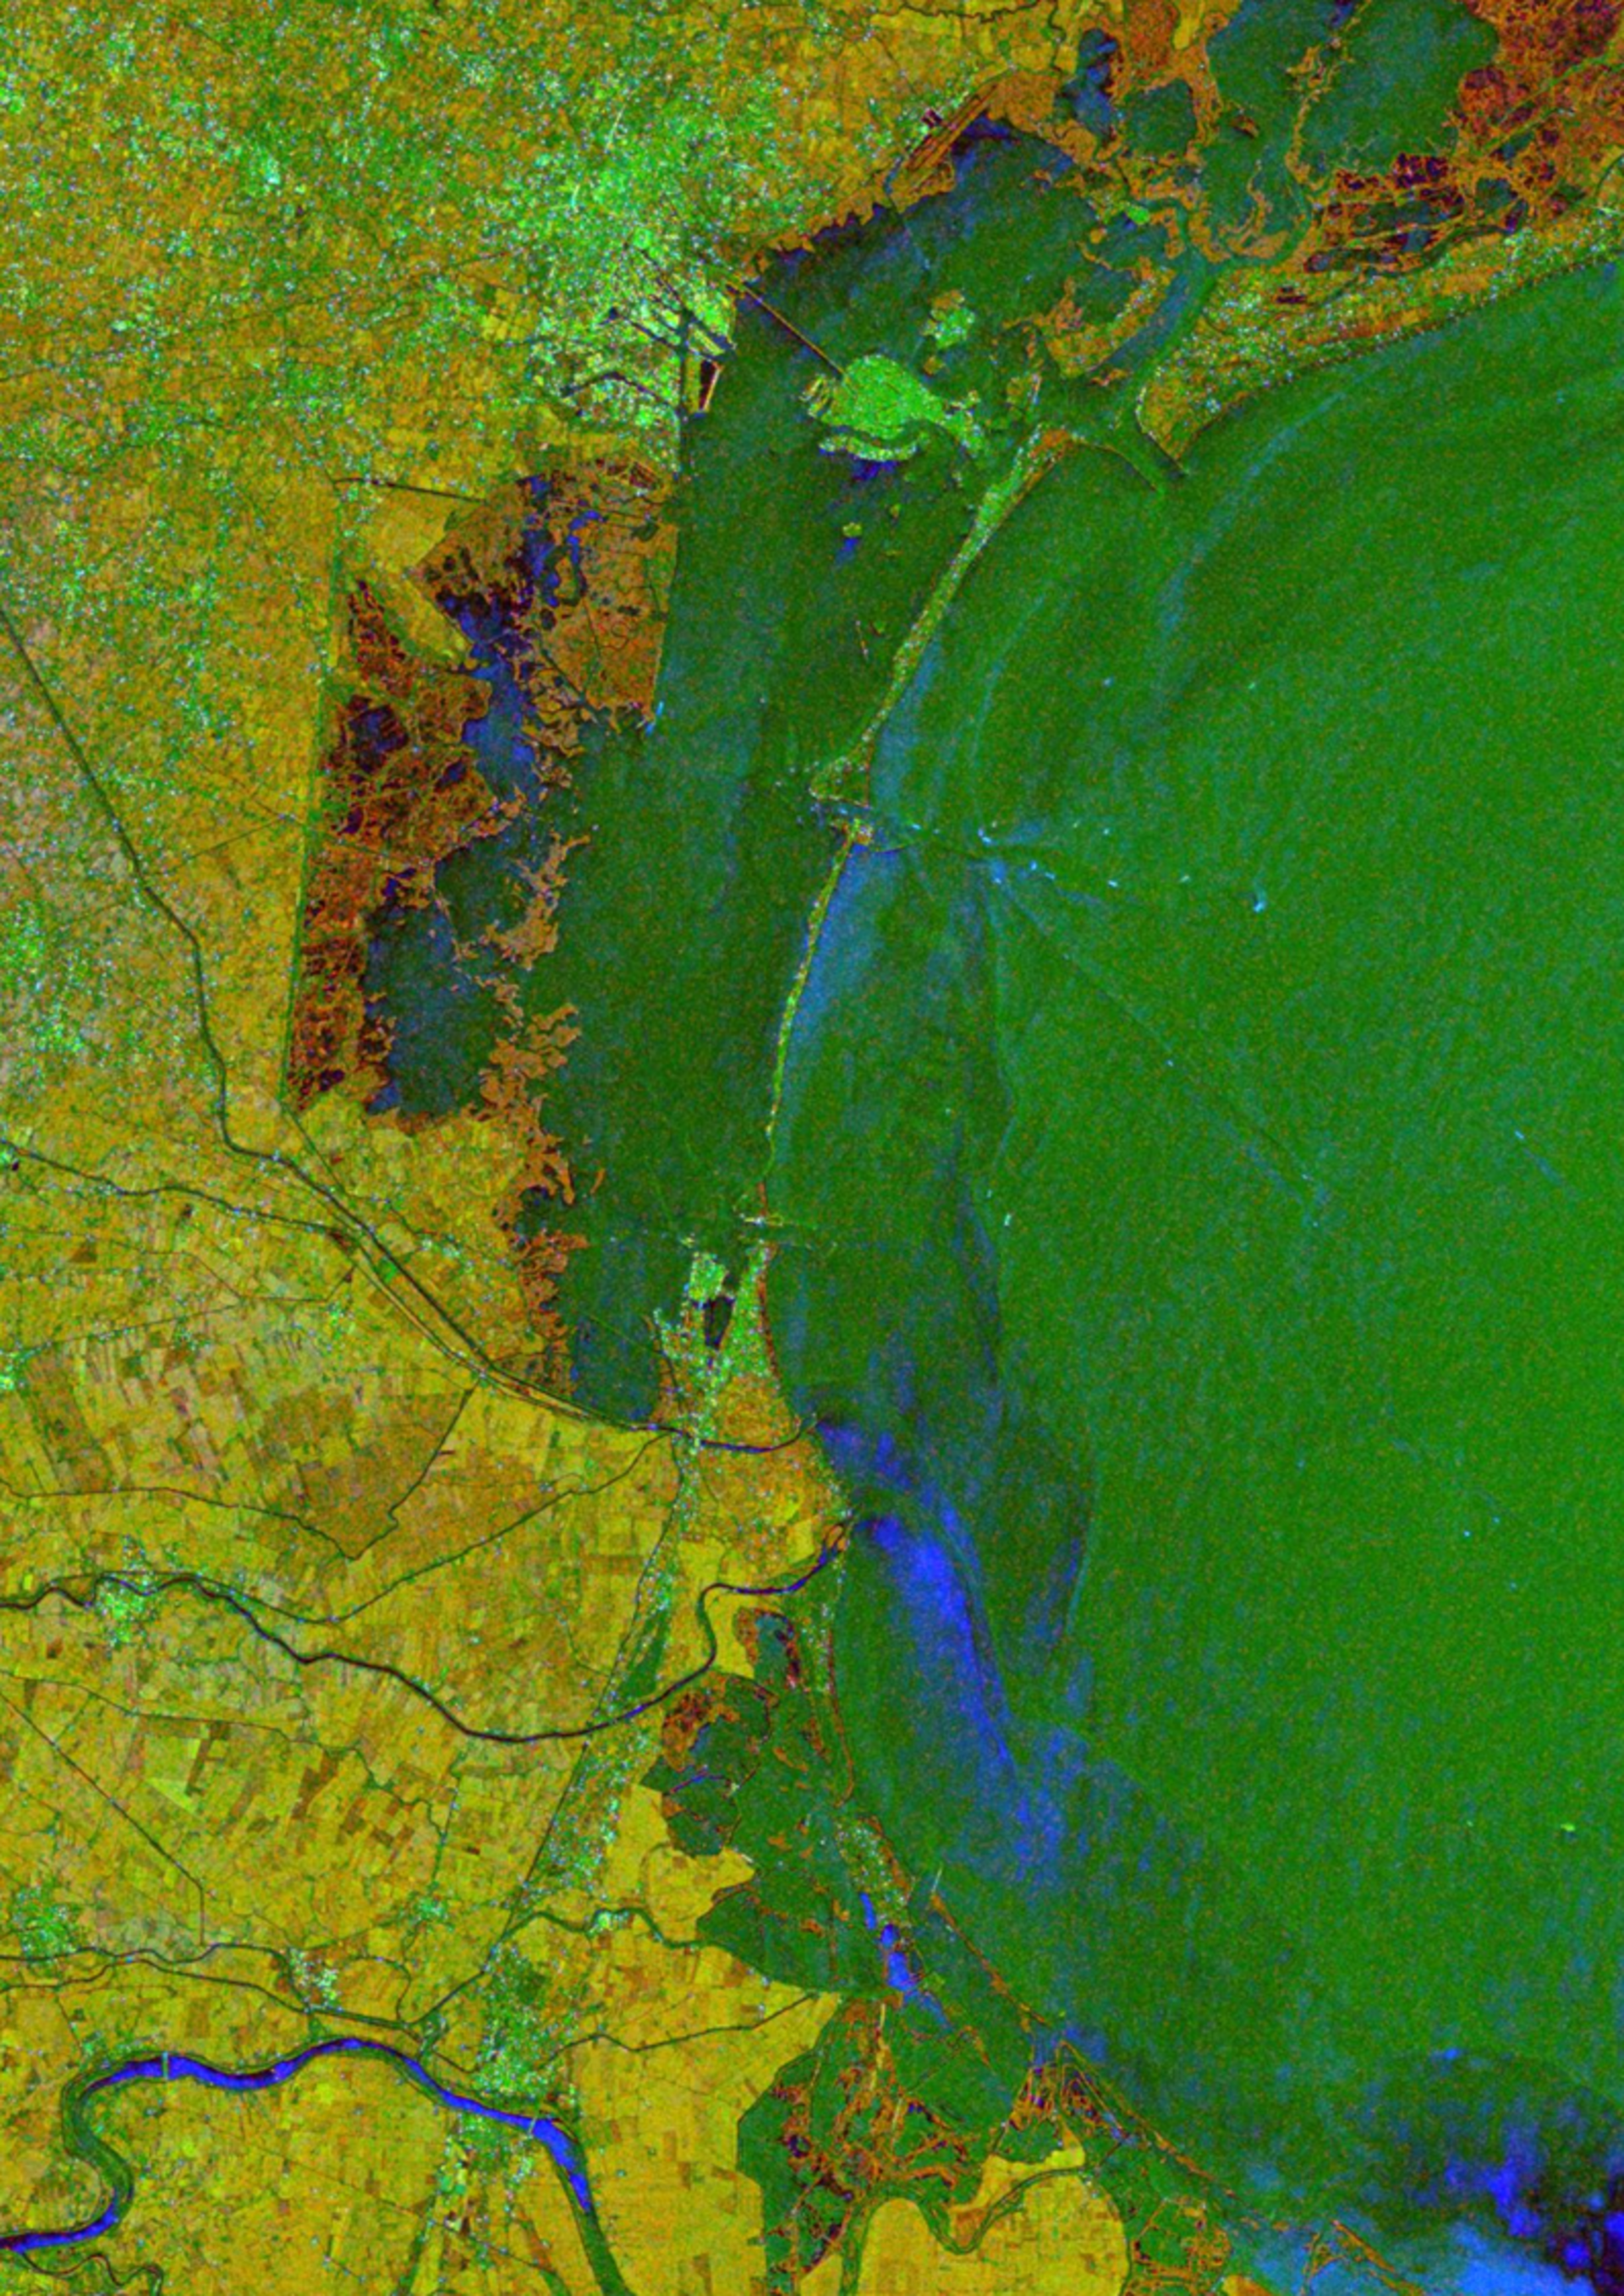 ERS-2/Envisat InSAR tandem interferogram showing Po river delta, Italy